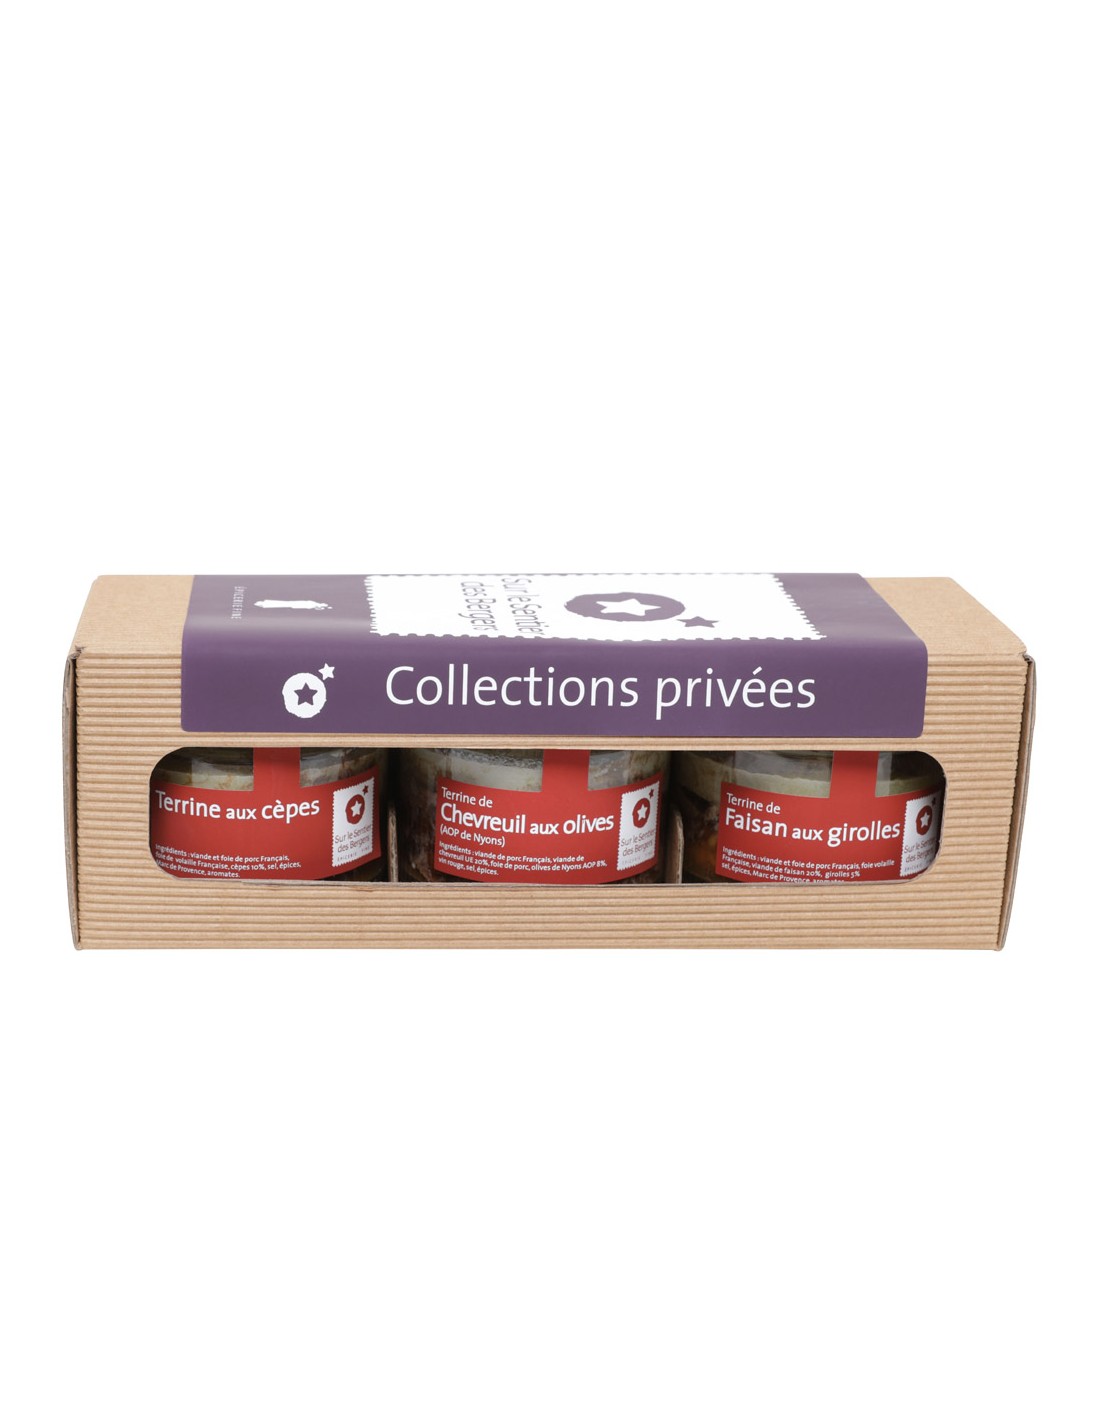 Coffret Collection 3 pots - Terrines Artisanales | Produits d'épicerie fine